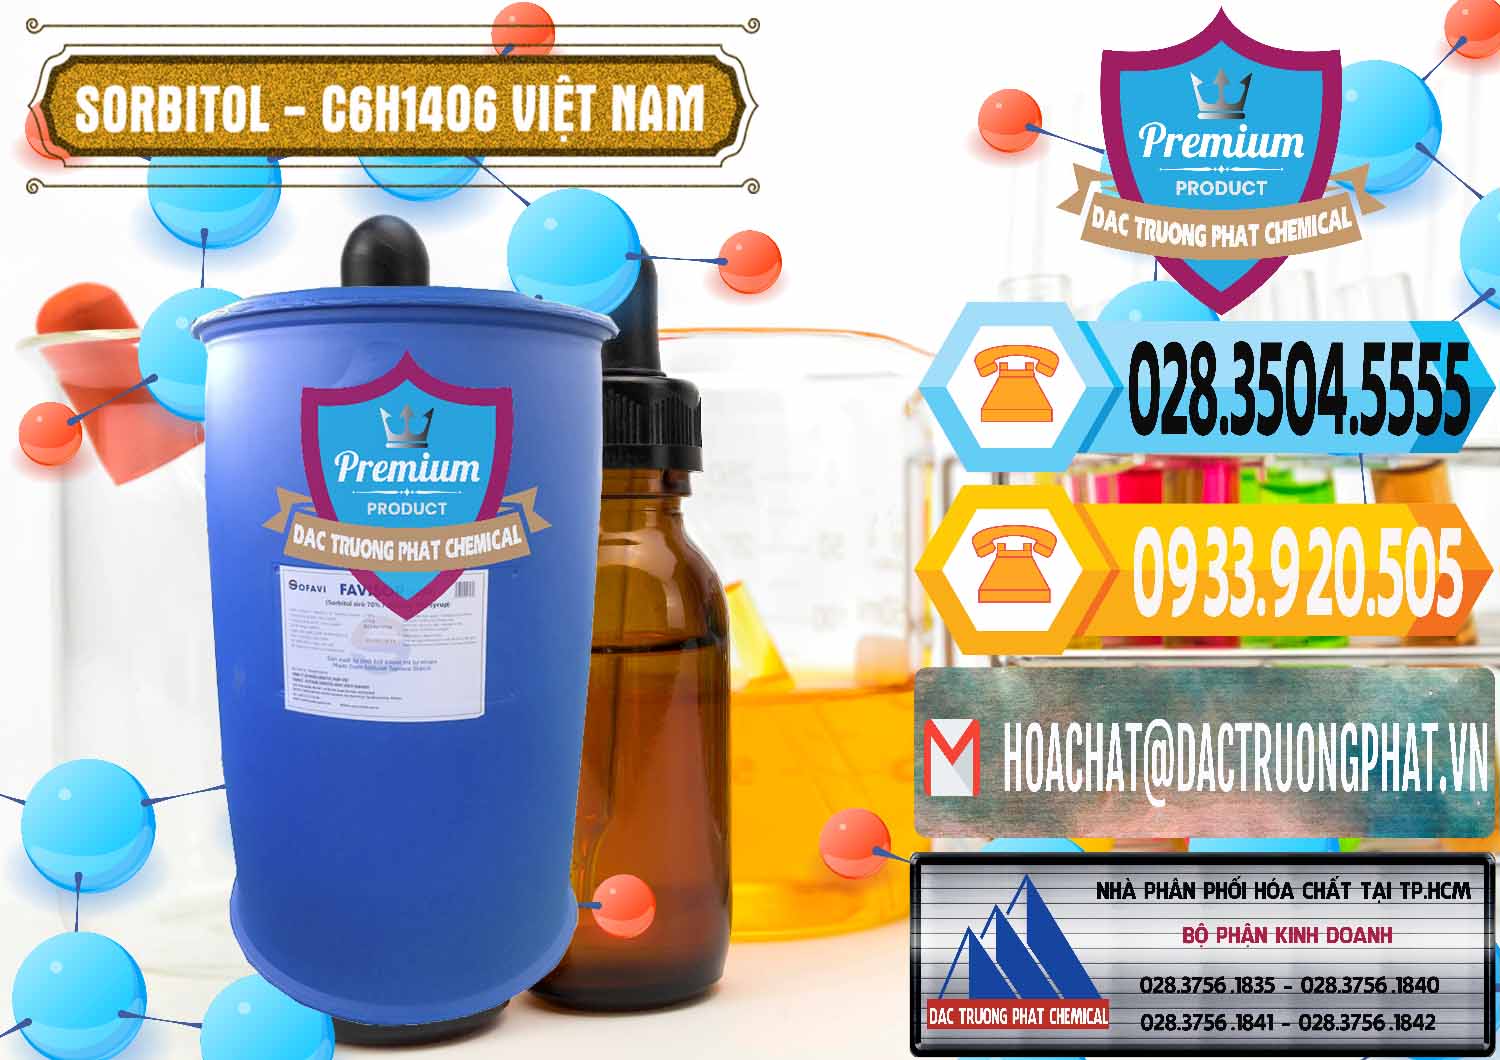 Công ty chuyên phân phối _ cung ứng Sorbitol - C6H14O6 Lỏng 70% Food Grade Việt Nam - 0438 - Đơn vị chuyên bán & phân phối hóa chất tại TP.HCM - hoachattayrua.net